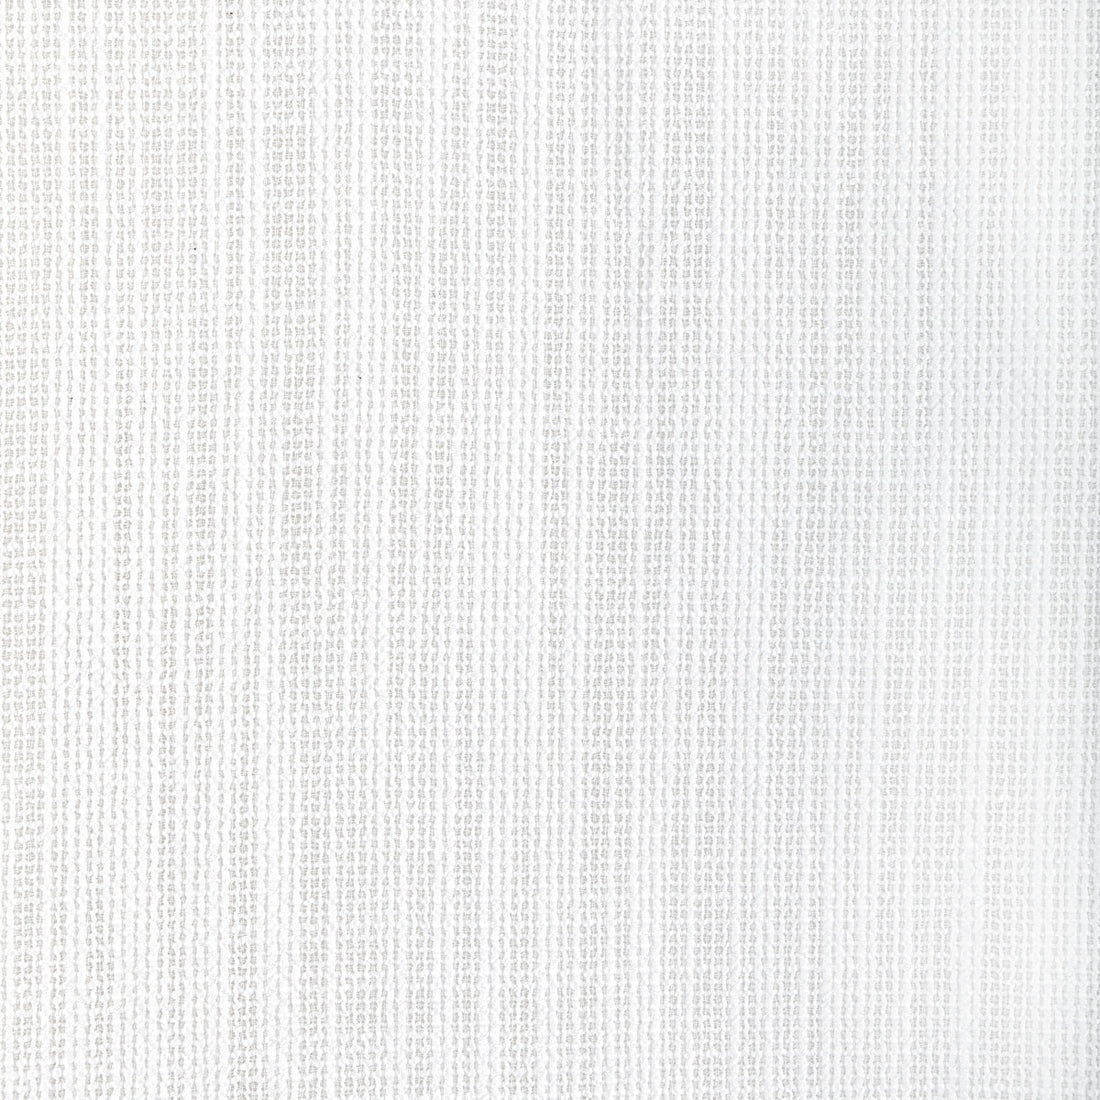 Kravet Design fabric in 4940-101 color - pattern 4940.101.0 - by Kravet Basics